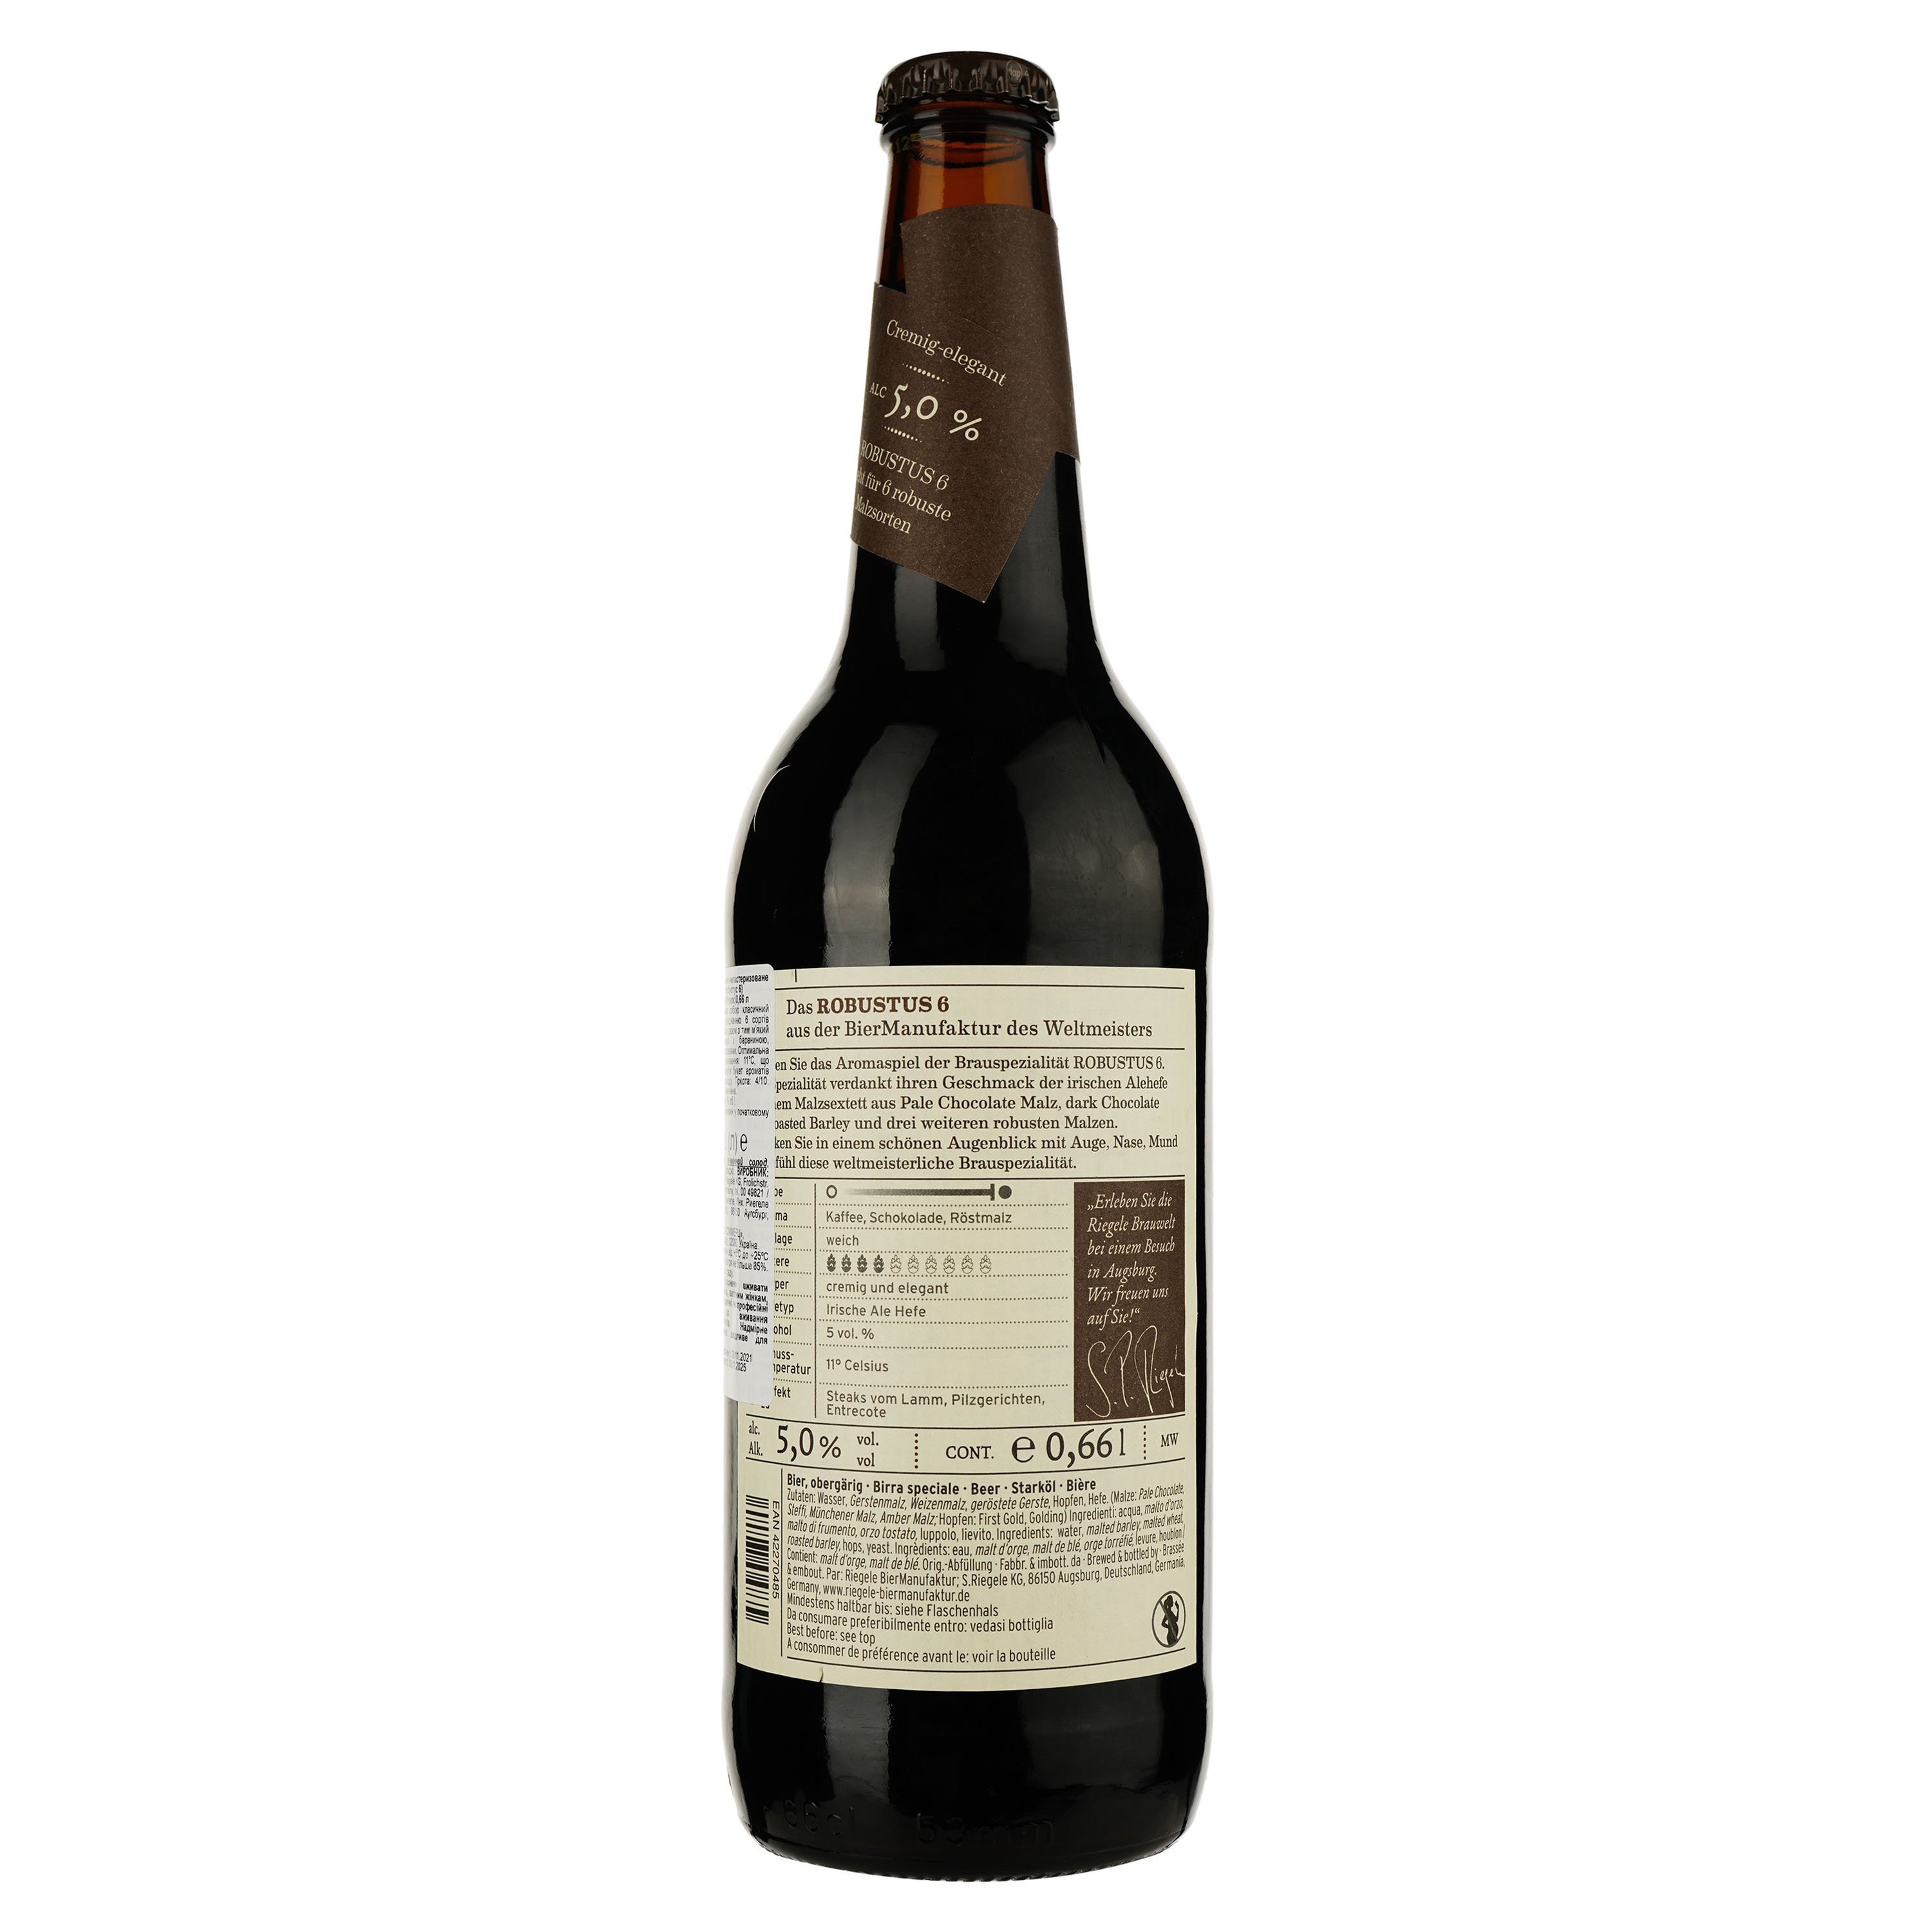 Пиво Riegele Robustus 6 темное фильтрованное, 5%, 0,66 л (665234) - фото 2